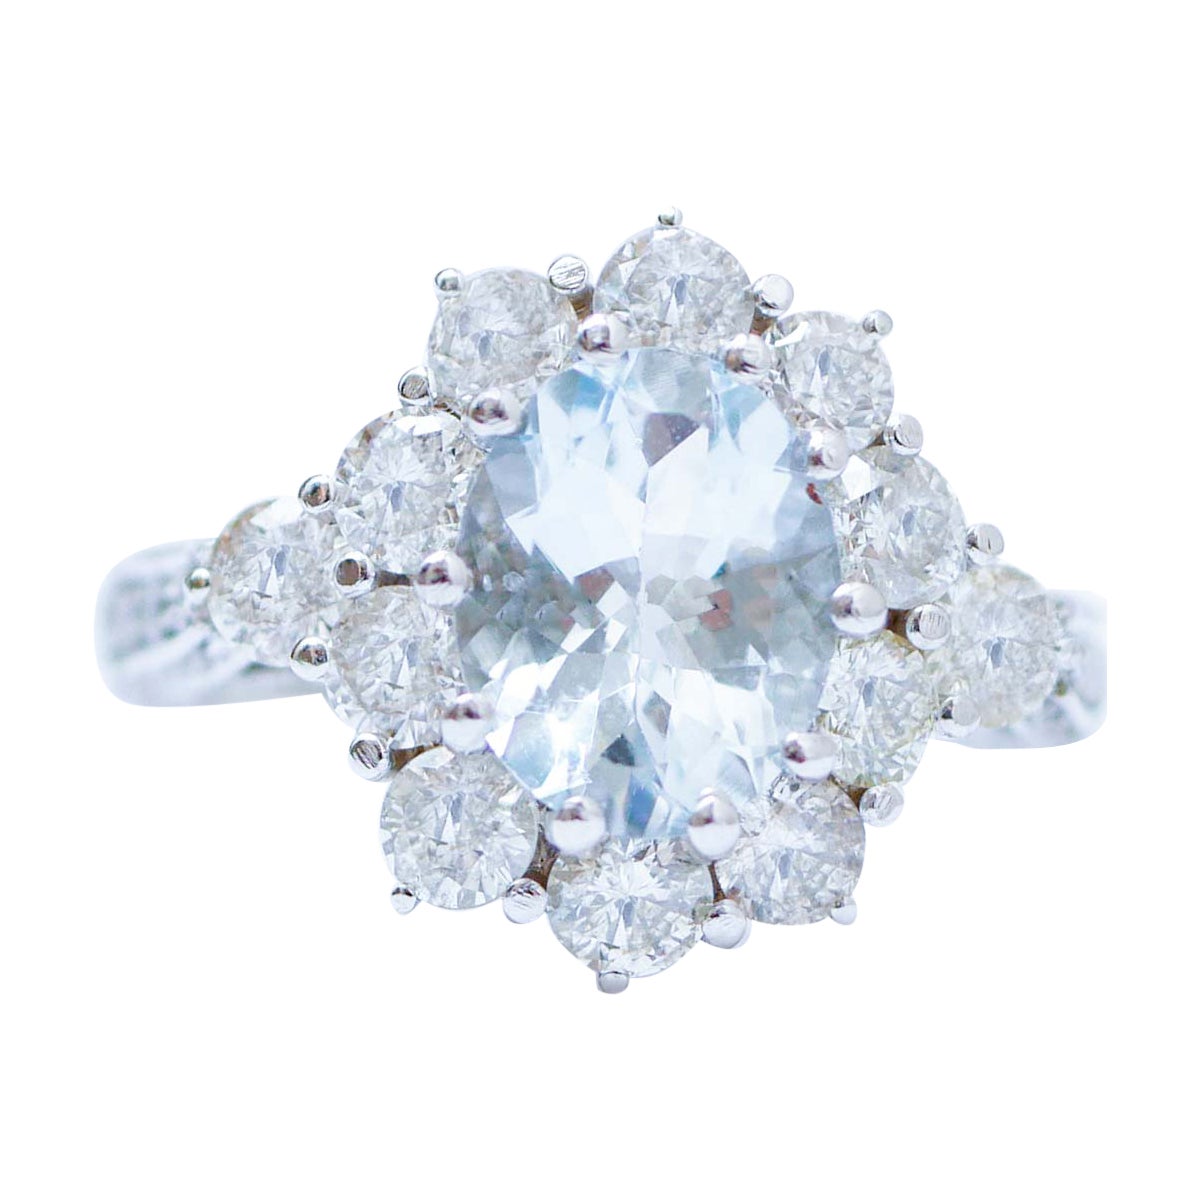 Aquamarine, Diamonds, Platinum Ring. For Sale